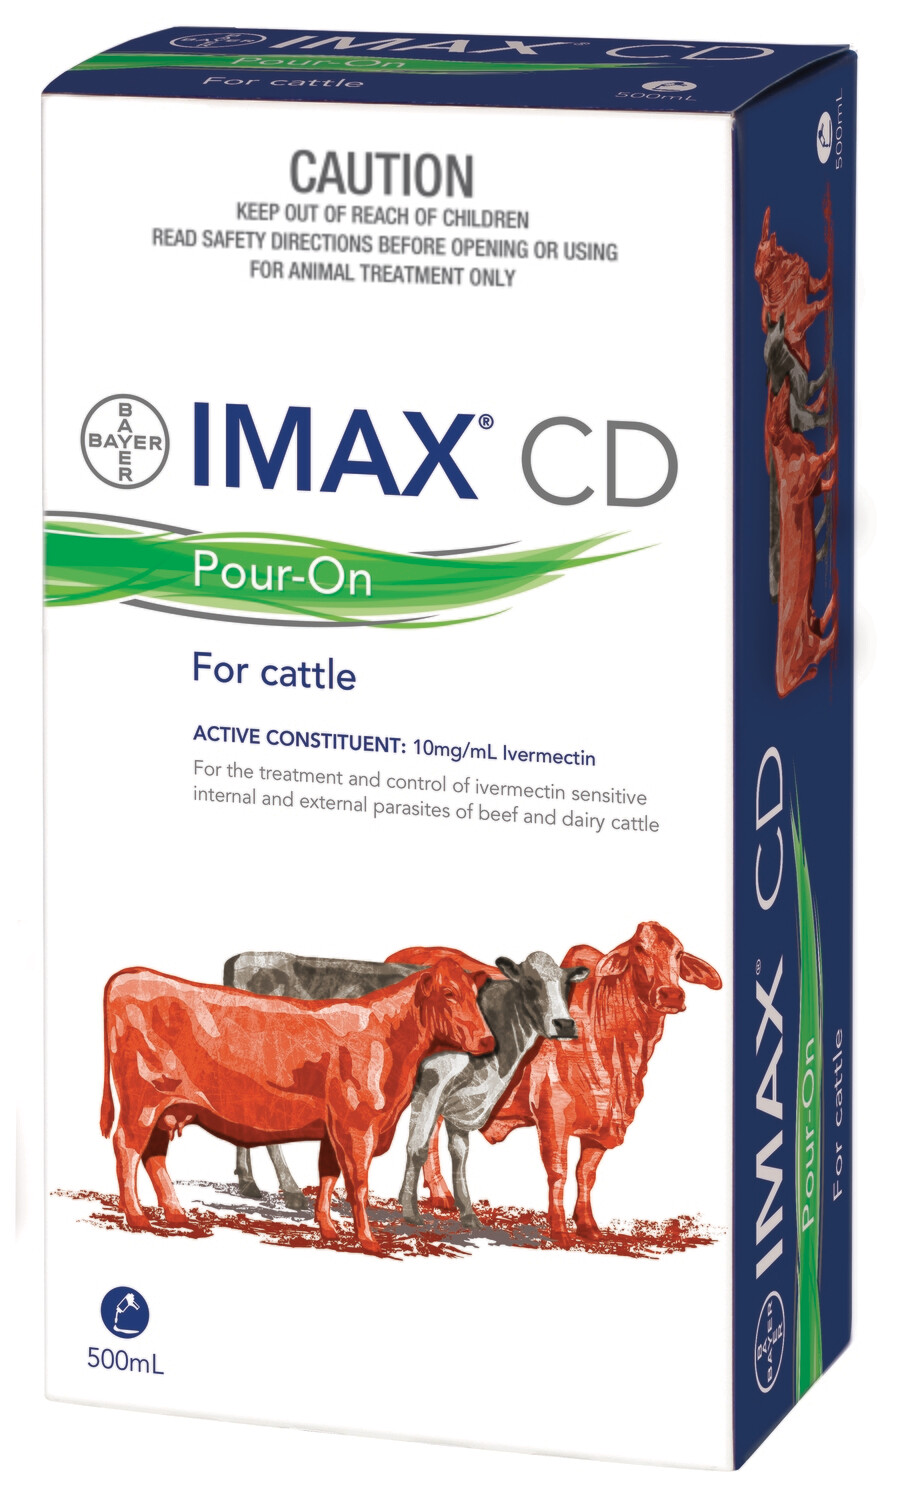 Bayer Imax CD Pour-On